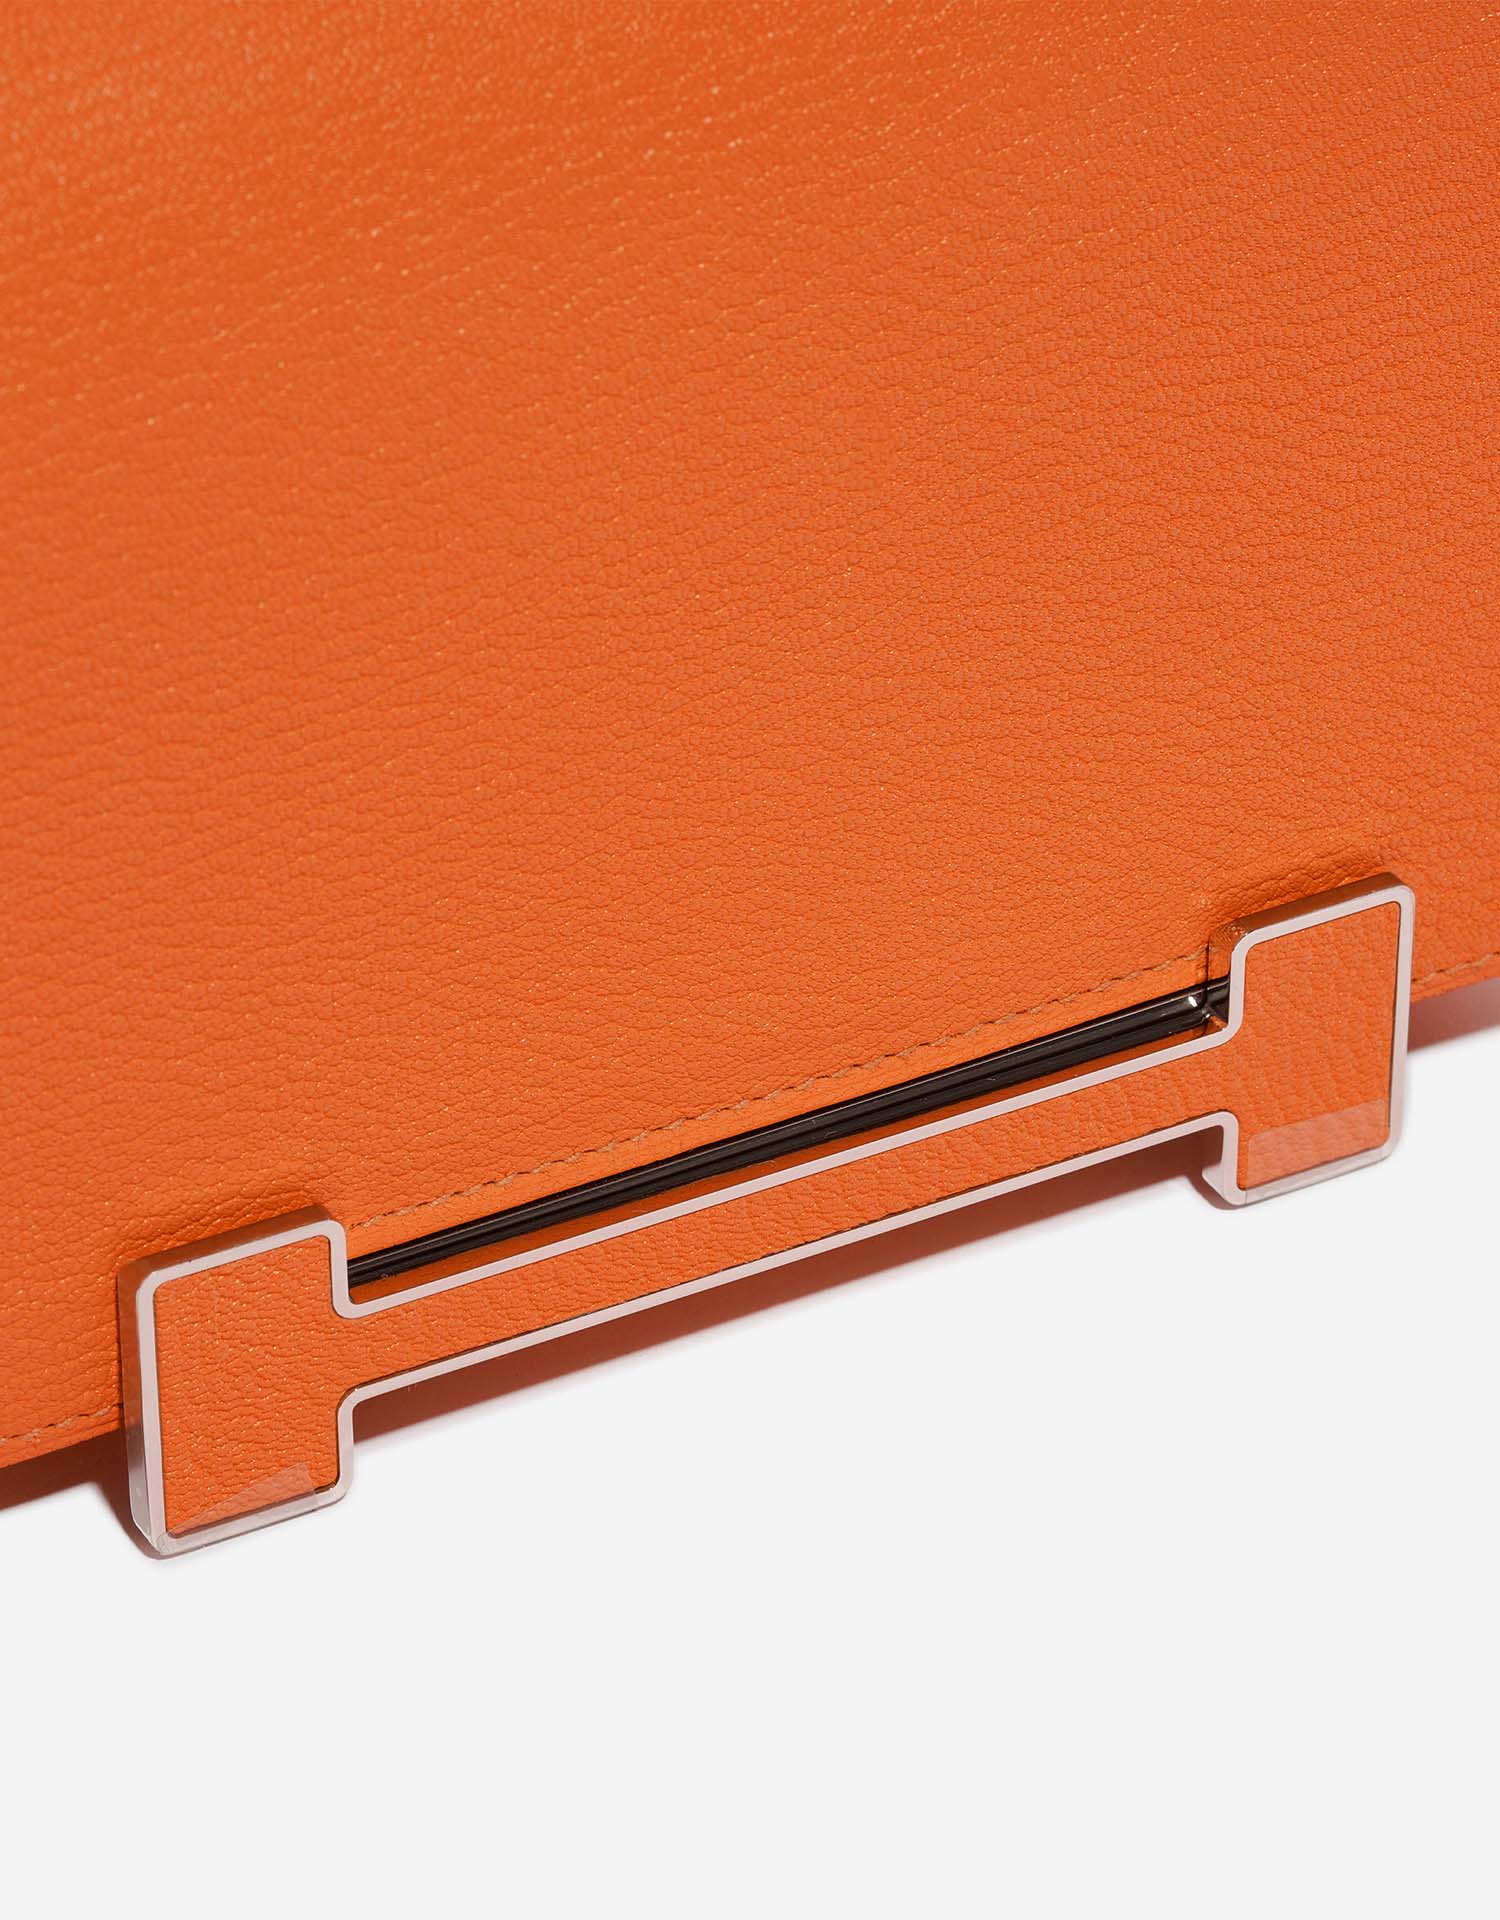 Hermès Geta Orange Verschluss-System | Verkaufen Sie Ihre Designer-Tasche auf Saclab.com